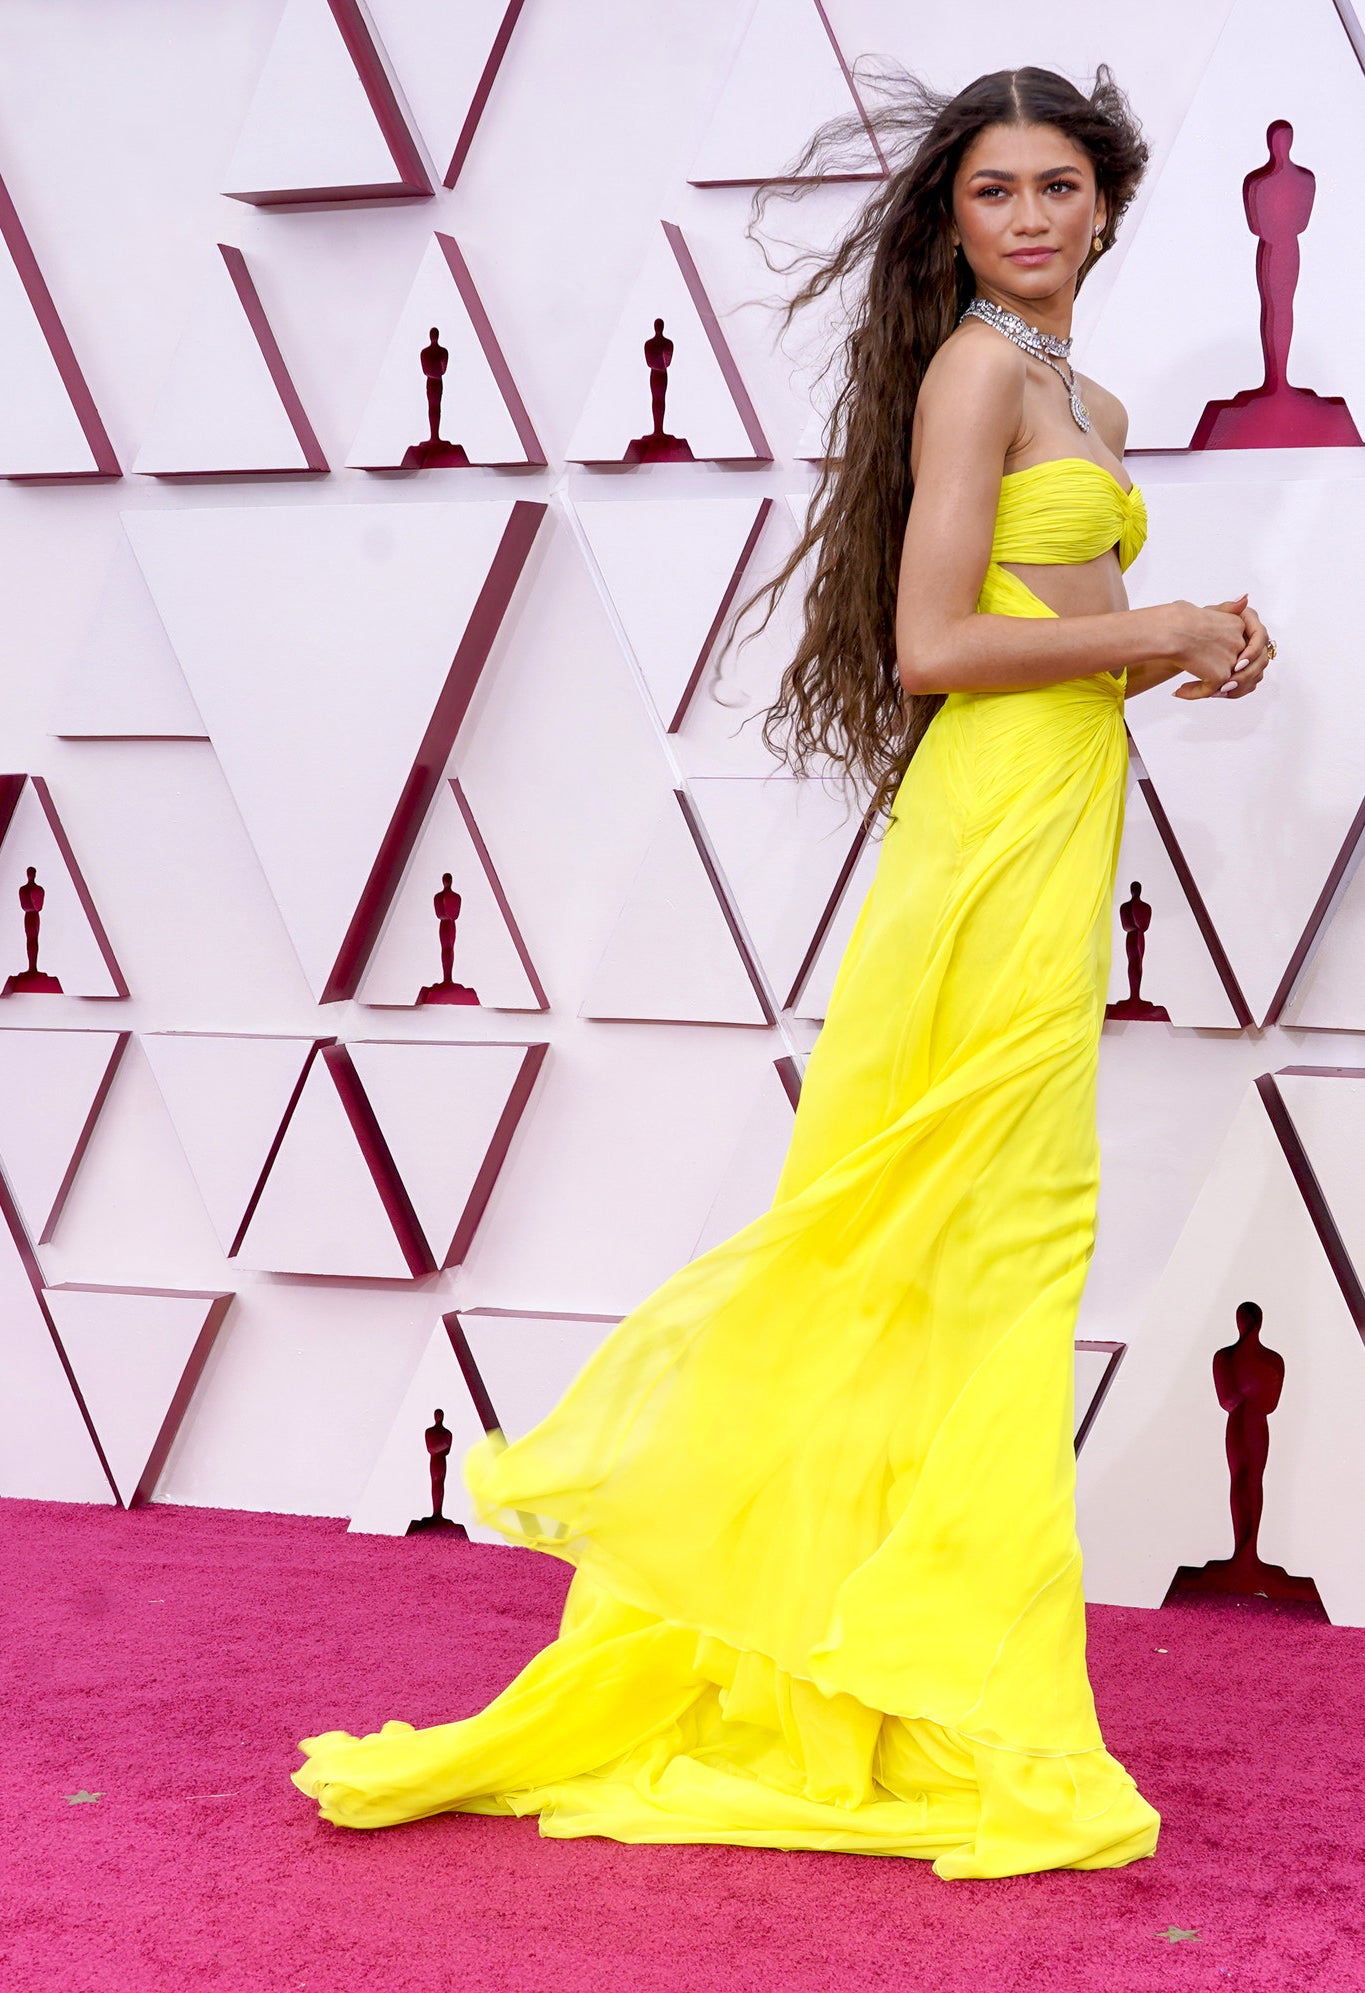 Zendaya穿着一件亮黄色长袍,头发流动